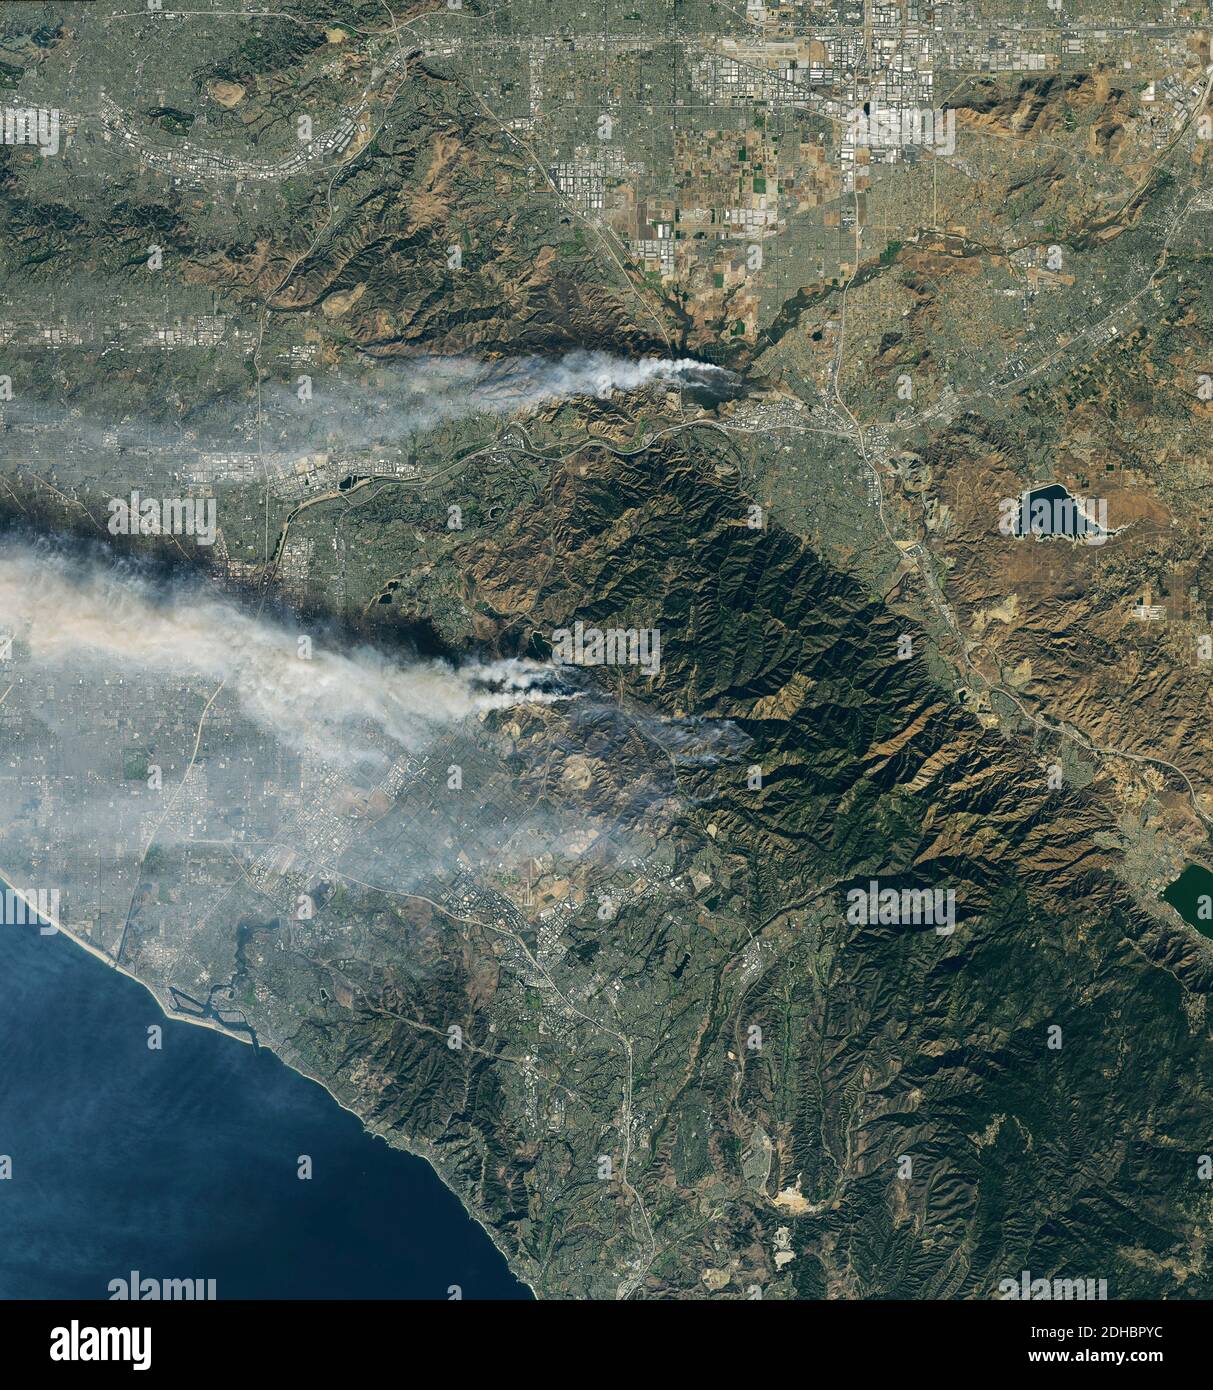 Rauchwolken steigen aus den Waldbränden des Flughafens und des Silverado Canyon auf dem Satelliten Landsat 8 am 3. Dezember 2020 in der Nähe von Los Angeles, Kalifornien. Stockfoto